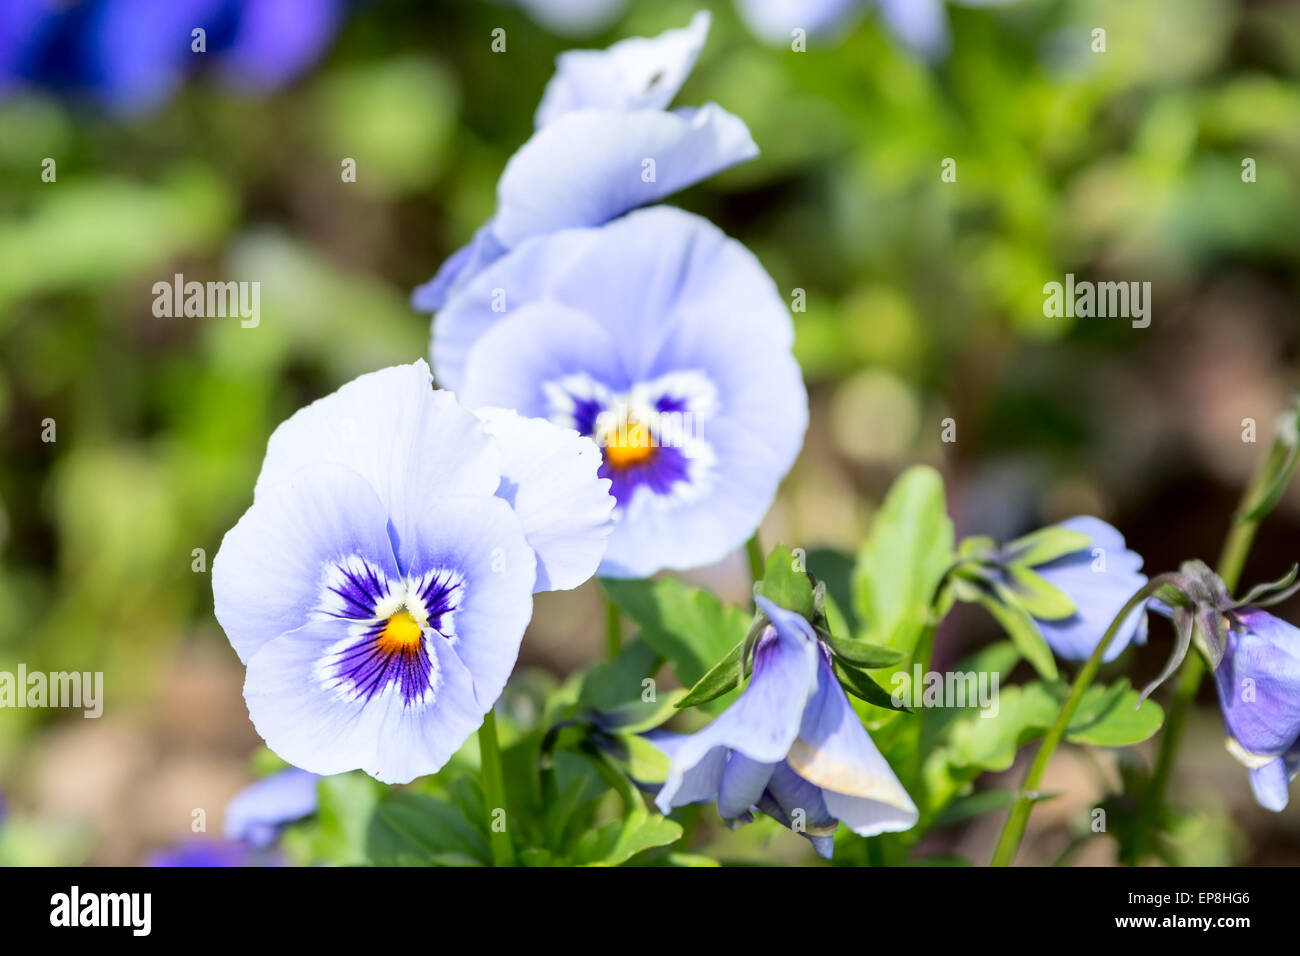 Garden pancy (Viola tricolore var. hortensis) qui si vede in un letto di fiori. Questi sono cool blu, bianco e giallo. Foto Stock